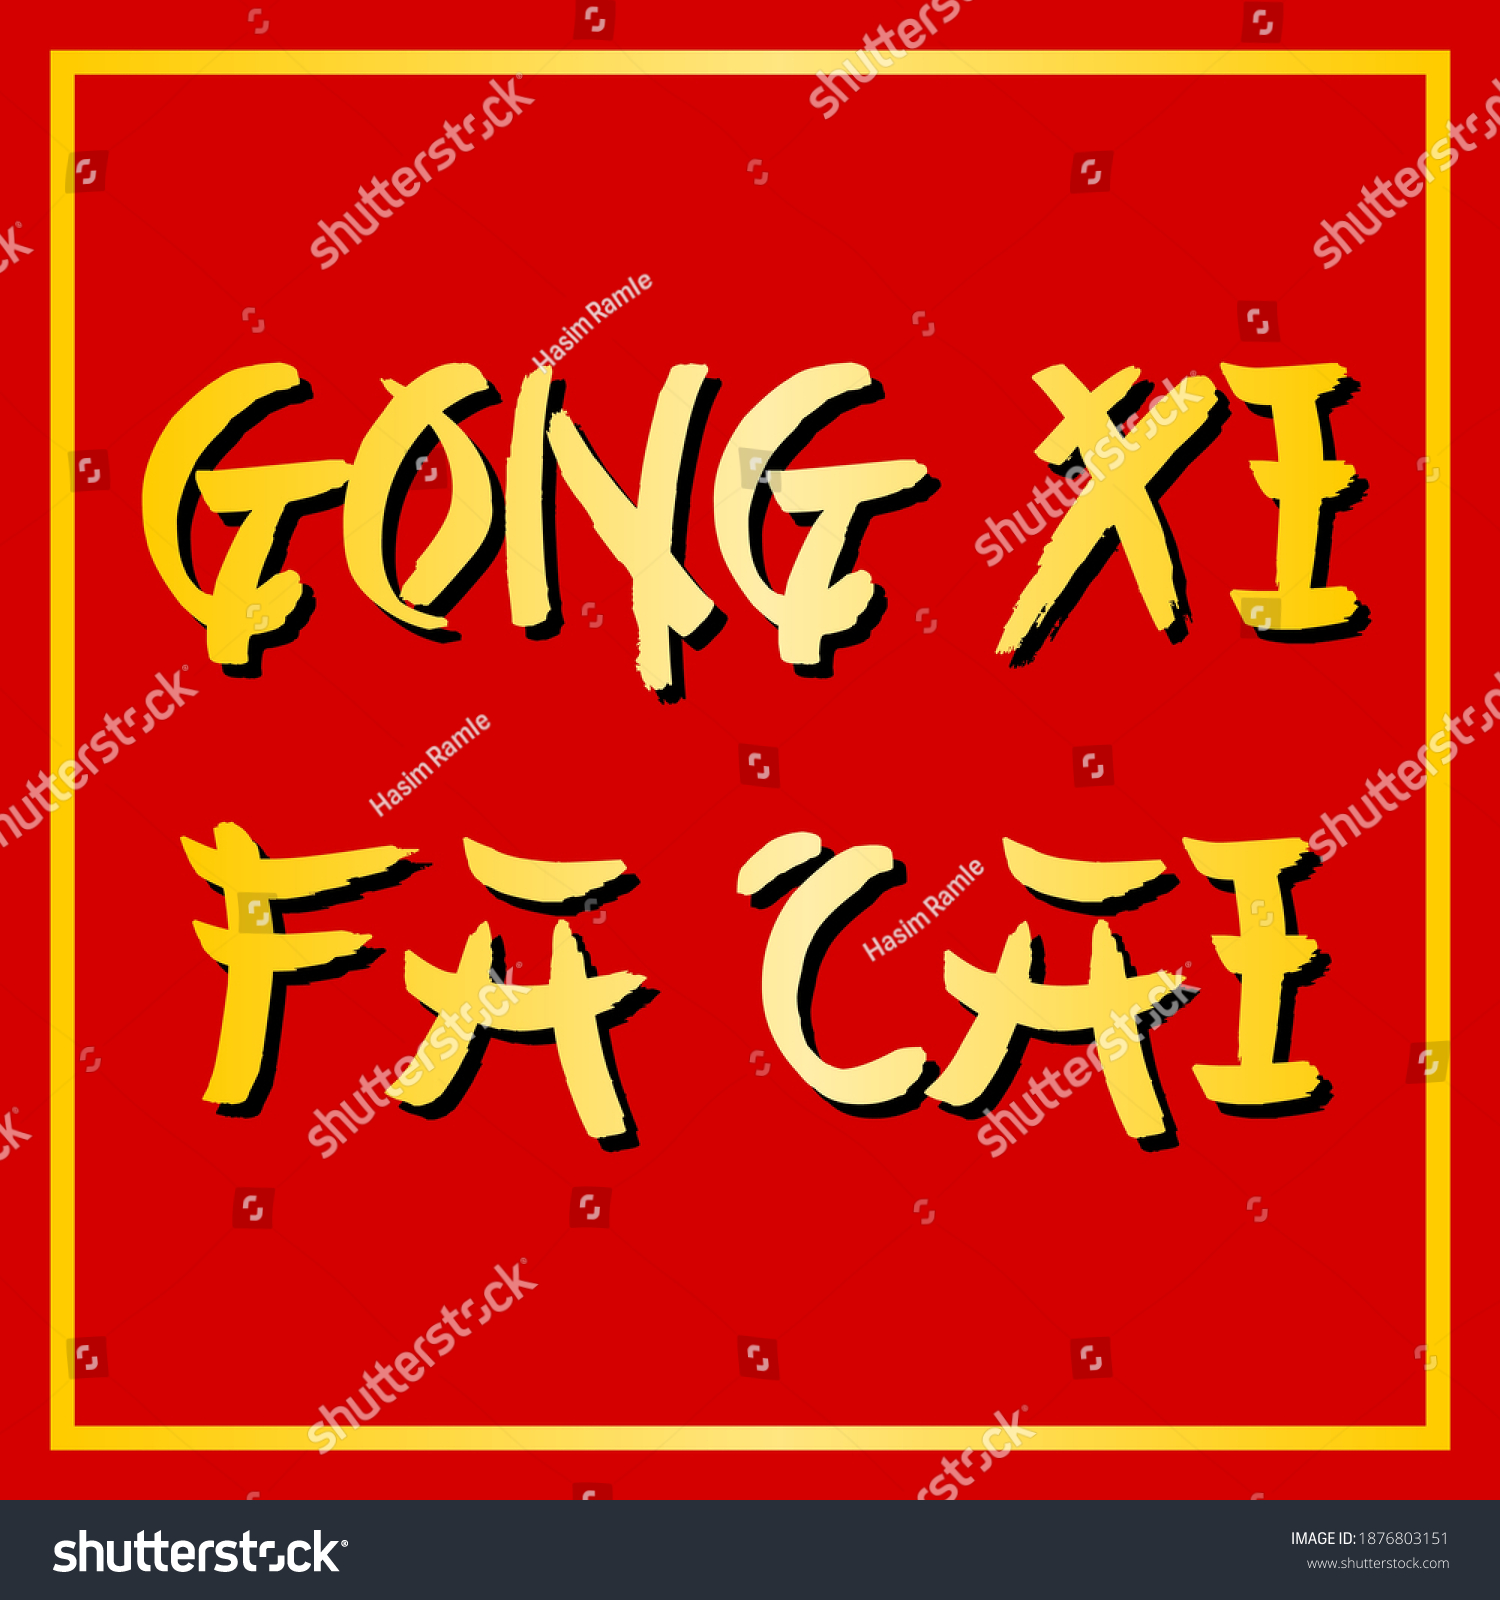 Font Gong Xi Fat Cai